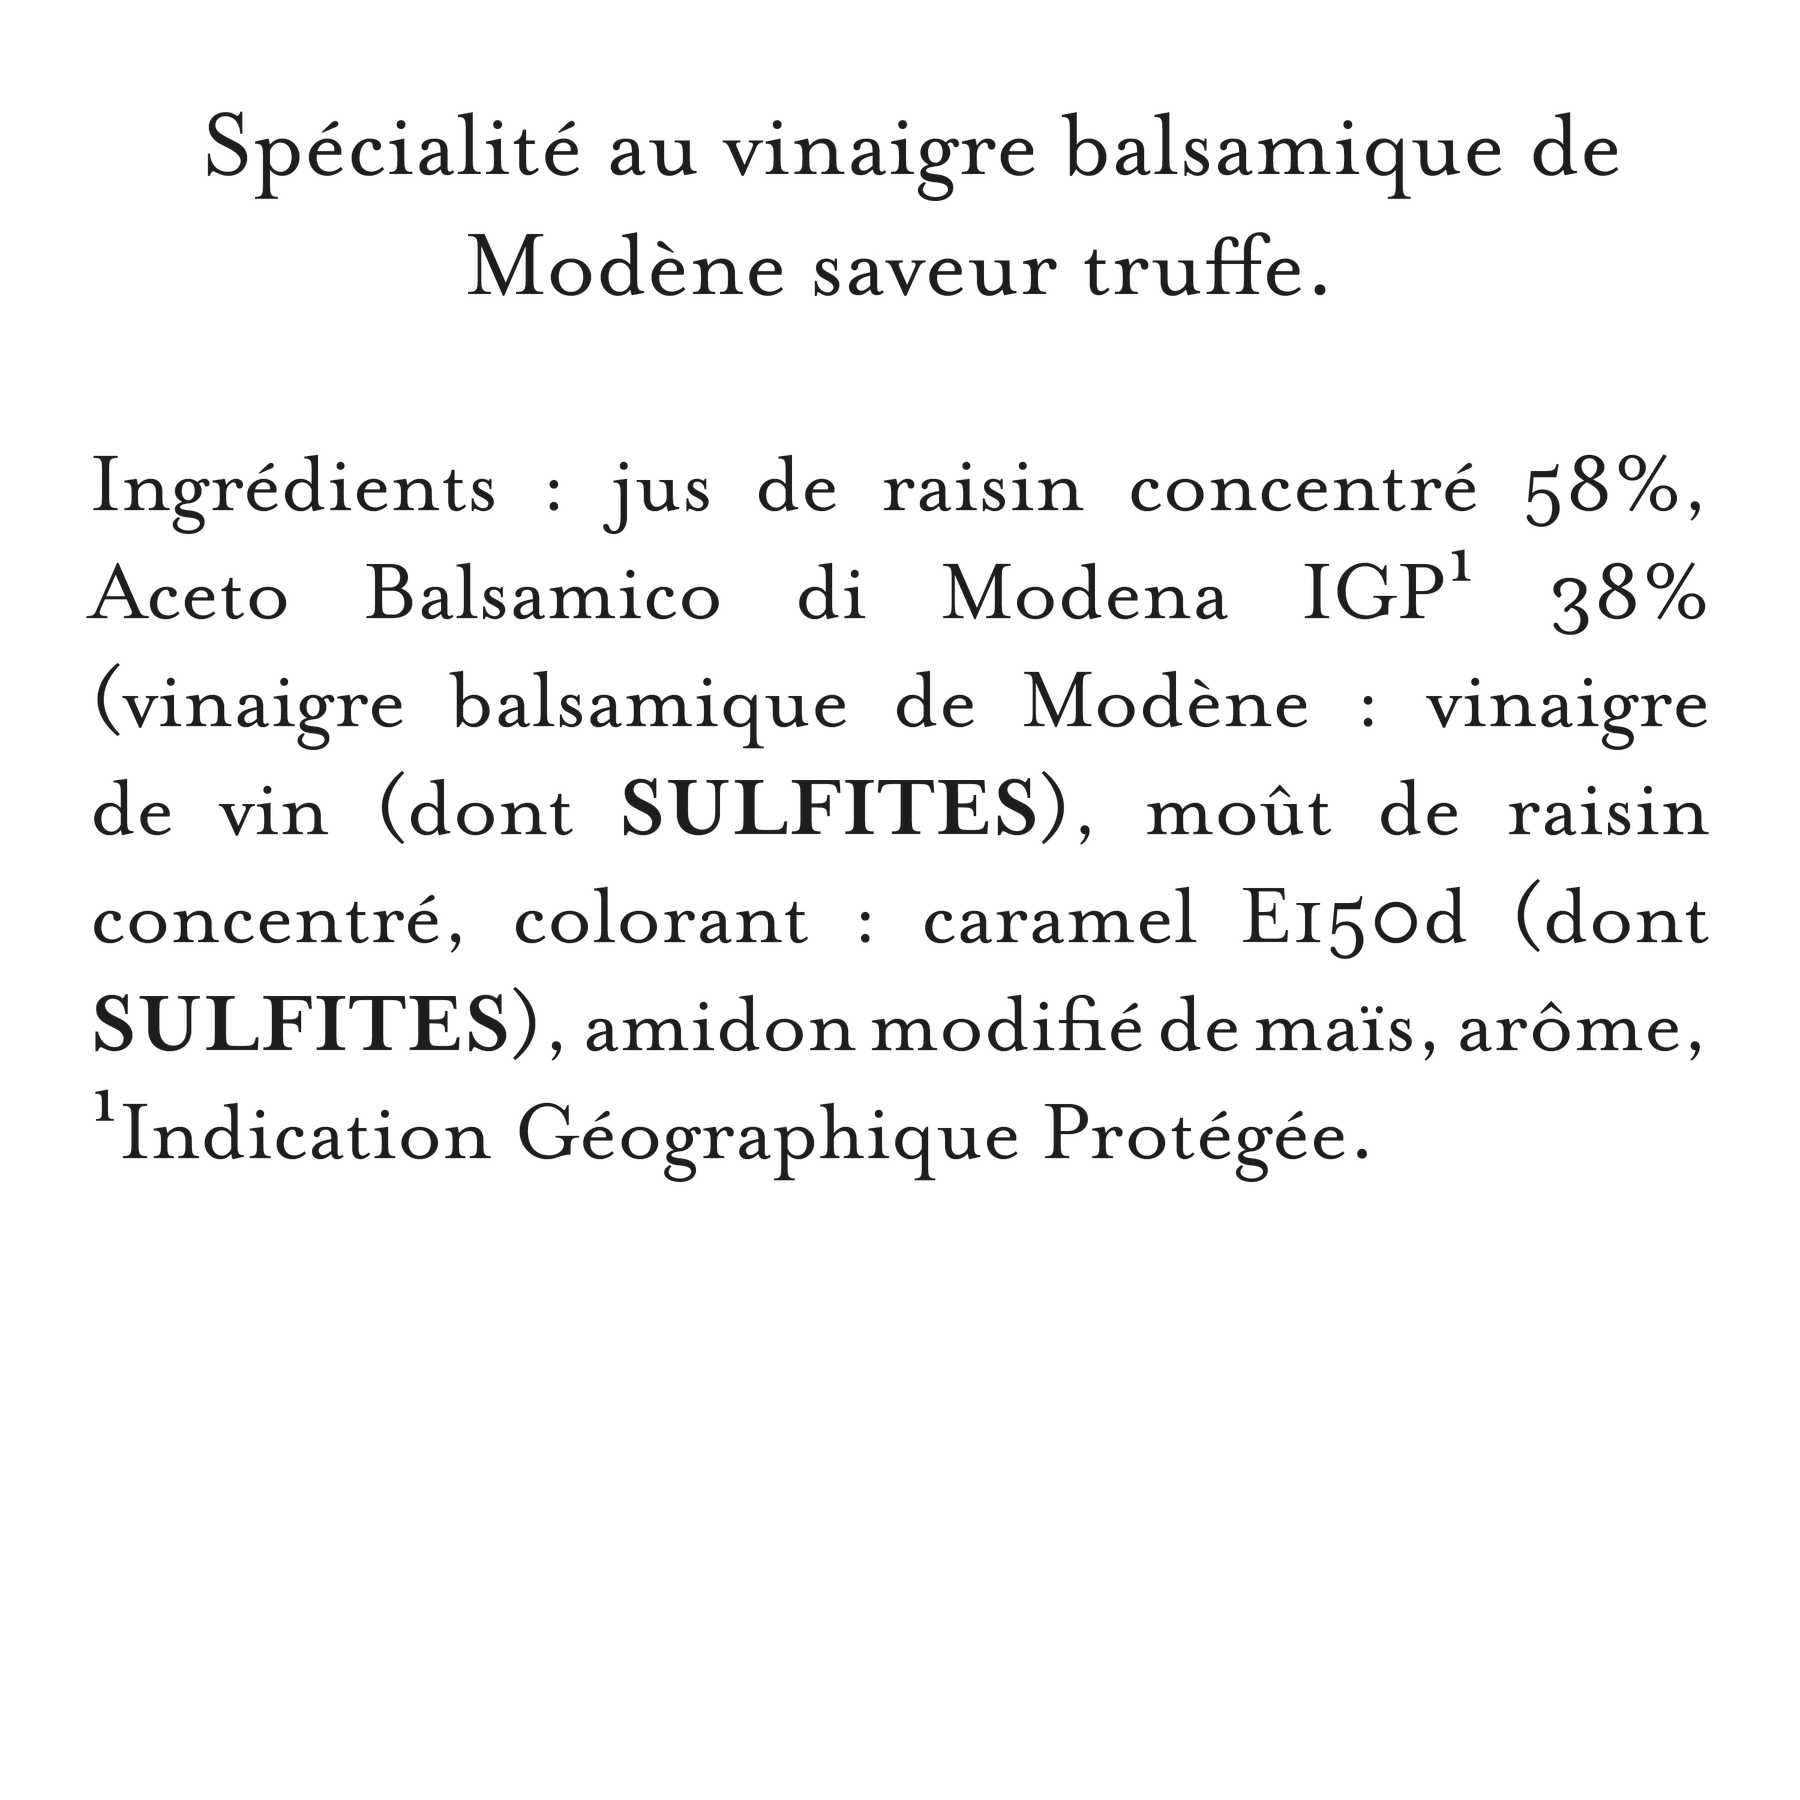 Maille - Velours de vinaigre balsamique de modene saveur truffe, 250 ml, liste d'ingrédients